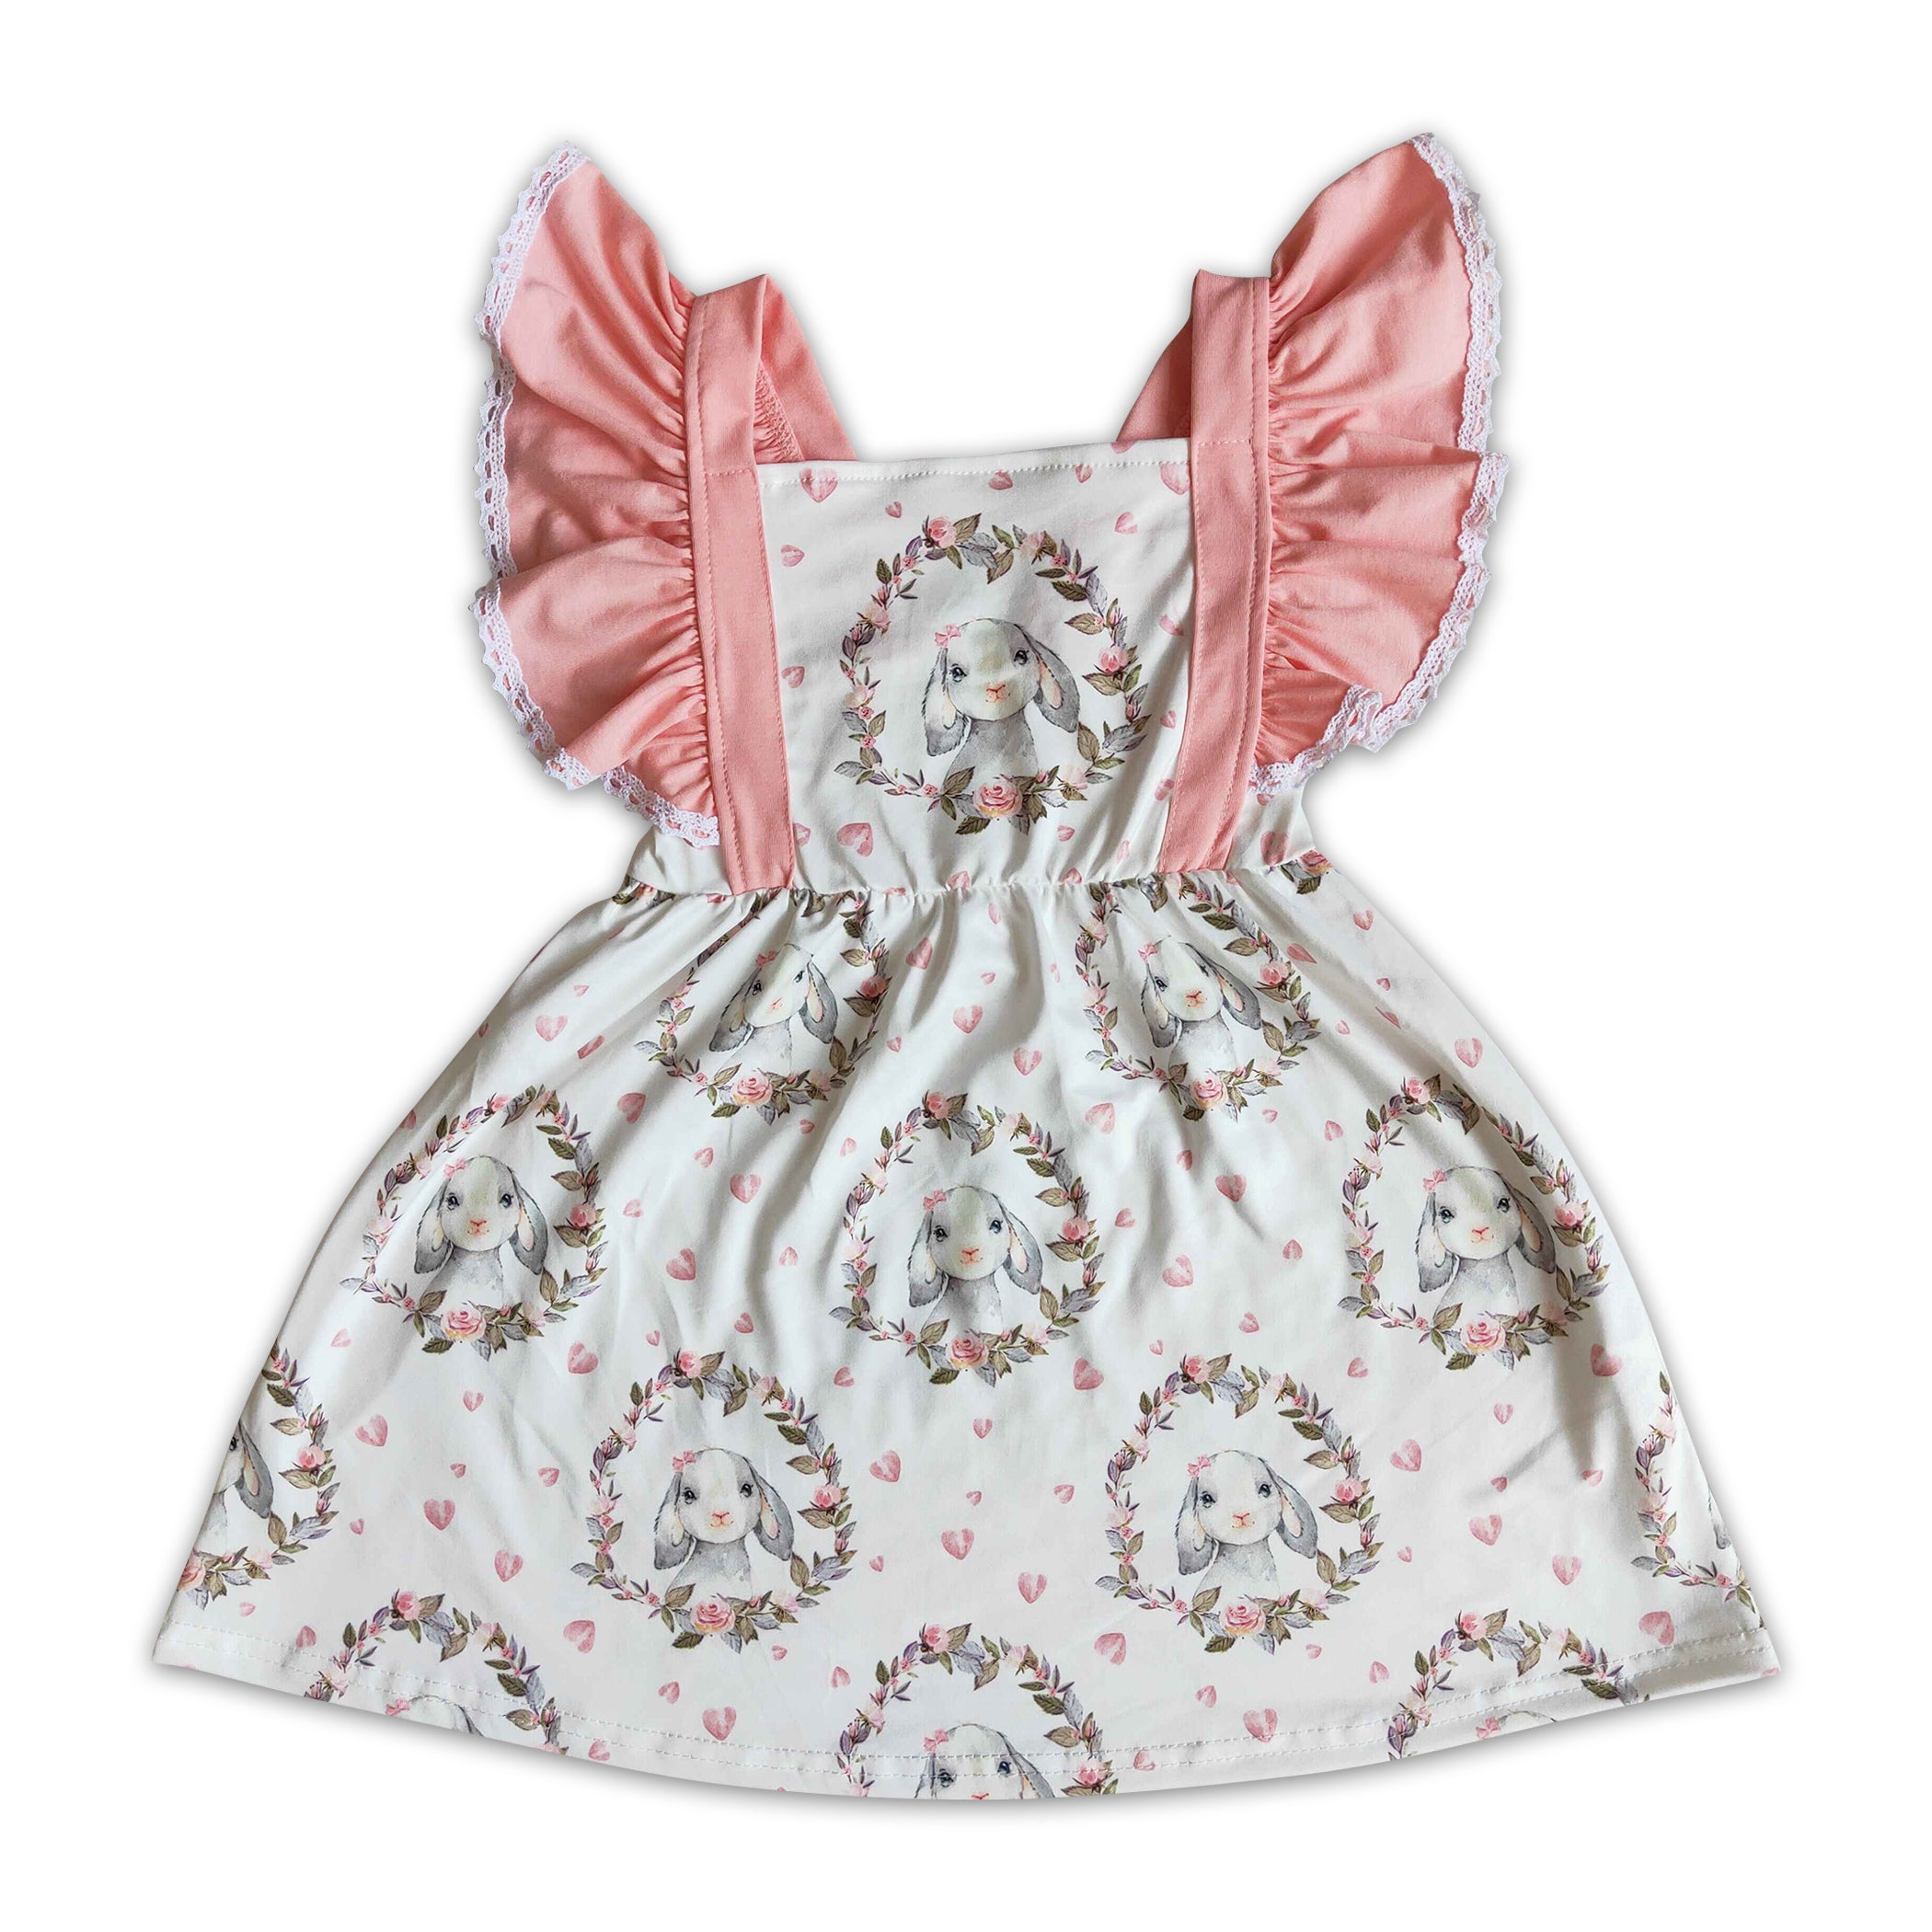 驚きの値段で】 新品Flutter Dress Rosebud Print 2Y ワンピース